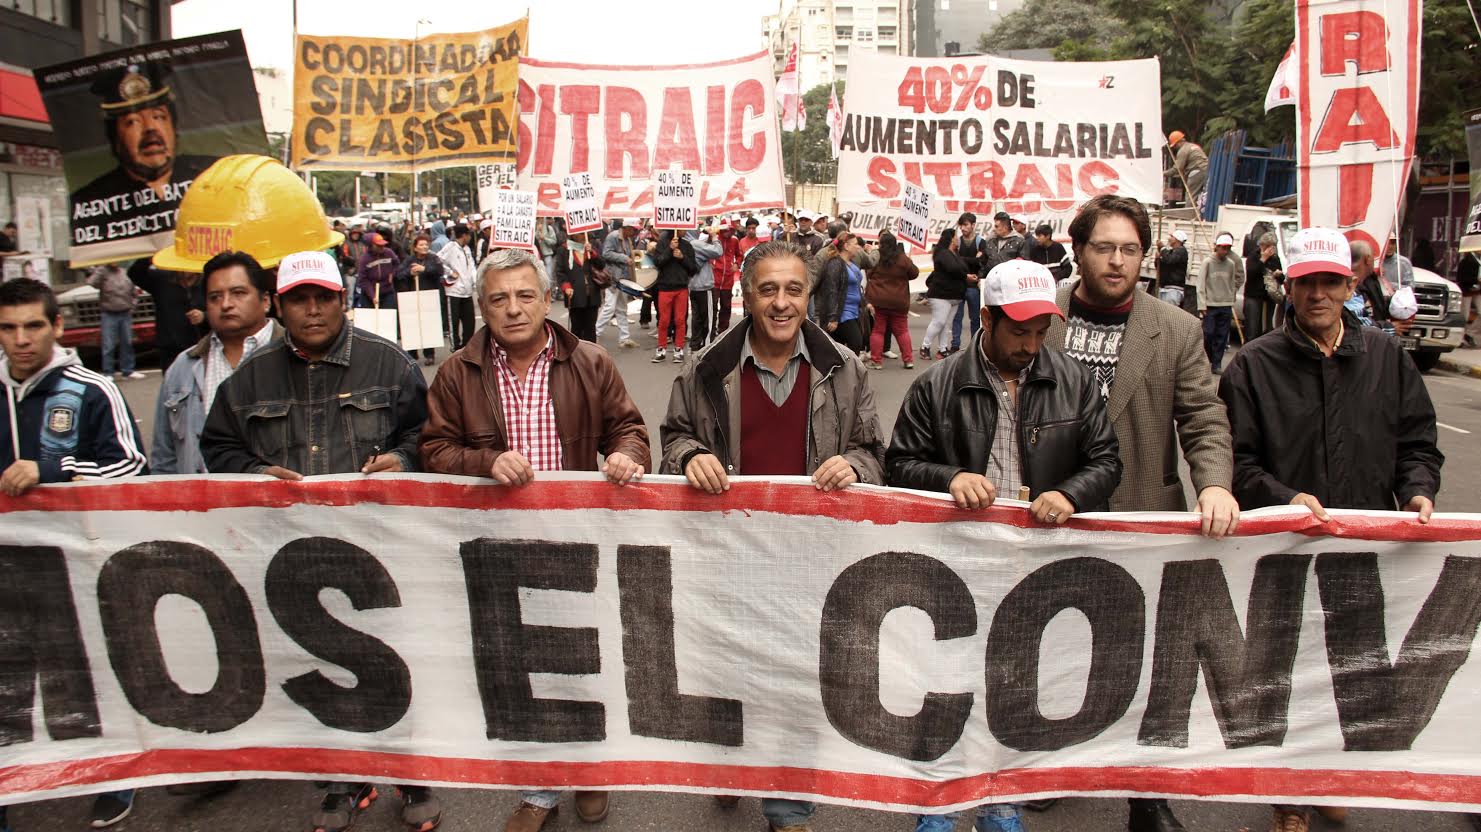 Pitrola: “El SITRAIC está poniendo en la agenda nacional la verdadera lucha salarial”